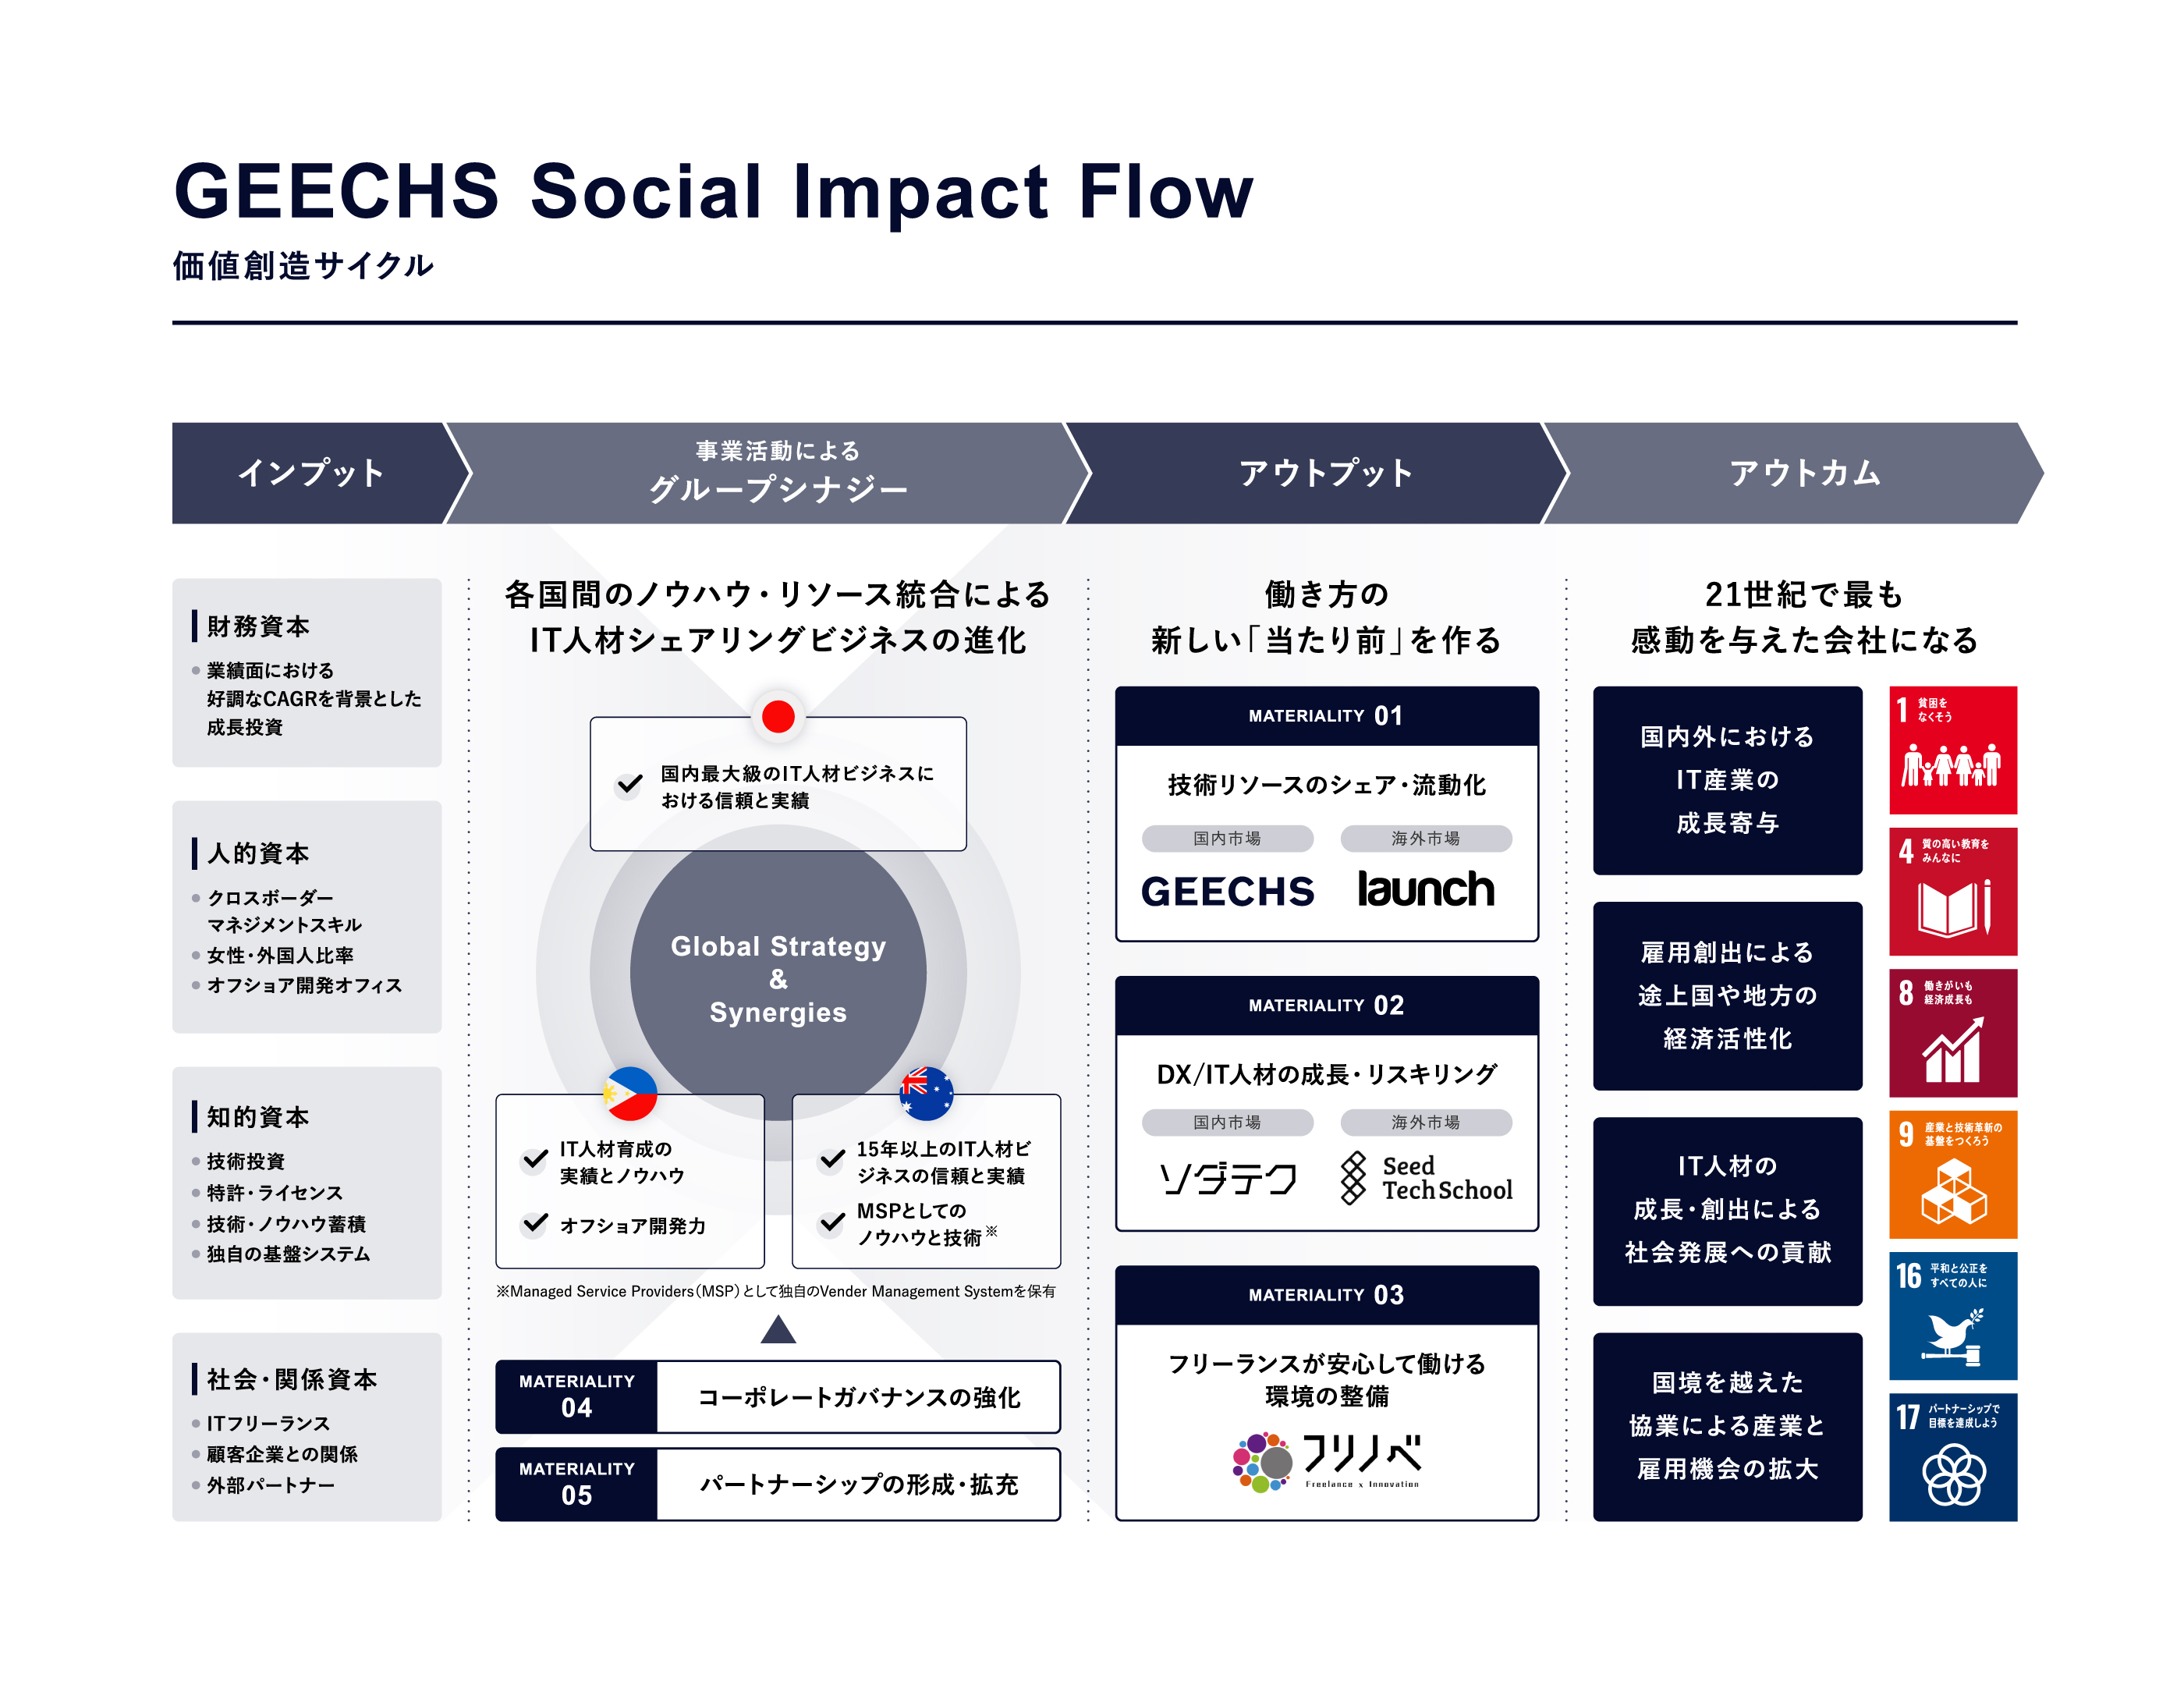 
【GEECHS Social Impact Flow 価値創造サイクル】
[インプット]
財務資本：業績面における好調なCSGRを背景とした成長投資
人的資本：クロスボーダーマネジメントスキル、女性・外国人比率、オフショア開発オフィス
知的資本：技術投資 特許・ライセンス、技術・ノウハウ蓄積、独自の基盤システム
社会・関係資本：ITフリーランス 顧客企業との関係、外部パートナー

[事業活動によるグループシナジー]
各国間のノウハウ・リソース統合によるIT人税シェアリングビジネスの進化

（Global Strategy & Synergies）
日本
・国内最大級のIT人材ビジネスにおける信頼と実績

フィリピン
・IT人材の蓄積とノウハウ
・オフショア開発力

オーストラリア
・15年以上のIT人材ビジネスの実績と信頼
・MSPとしてのノウハウと技術(Managed Service Providers(MSP)として独自のVnder Management Systemを保有)

MATERIALITY 04：コーポレートガバナンスの強化
MATERIALITY 05：パートナーシップの形成、充実

[アウトプット]
働き方の新しい「当たり前」を作る
MATERIALITY 01：技術リソースのシェア・流動化（国内市場：Geechs、海外市場：launch）
MATERIALITY 02：DX/IT人材の成長・リスキング（国内市場：ソダテク、海外市場：Seed Tech Scool）
MATERIALITY 03：フリーランスが安心して働ける環境の整備（フリノベ）

[アウトカム]
21世紀で最も感動を与えた会社になる
・国内外におけるIT産業の成長寄与
・雇用創出による途上国や地方の経済活性化
・IT人材の成長・創出におけつる社会発展への貢献
・国境を越えた協業による産業と雇用機会の拡大

（SDGs）
1:貧困をなくそう
4:室の高い教育をみんなに
8:働きがいも経済成長も
9:産業と技術革新の基盤をつくろう
16:平和と公正をすべての人に
17:パートナーシップで目標を達成しよう
